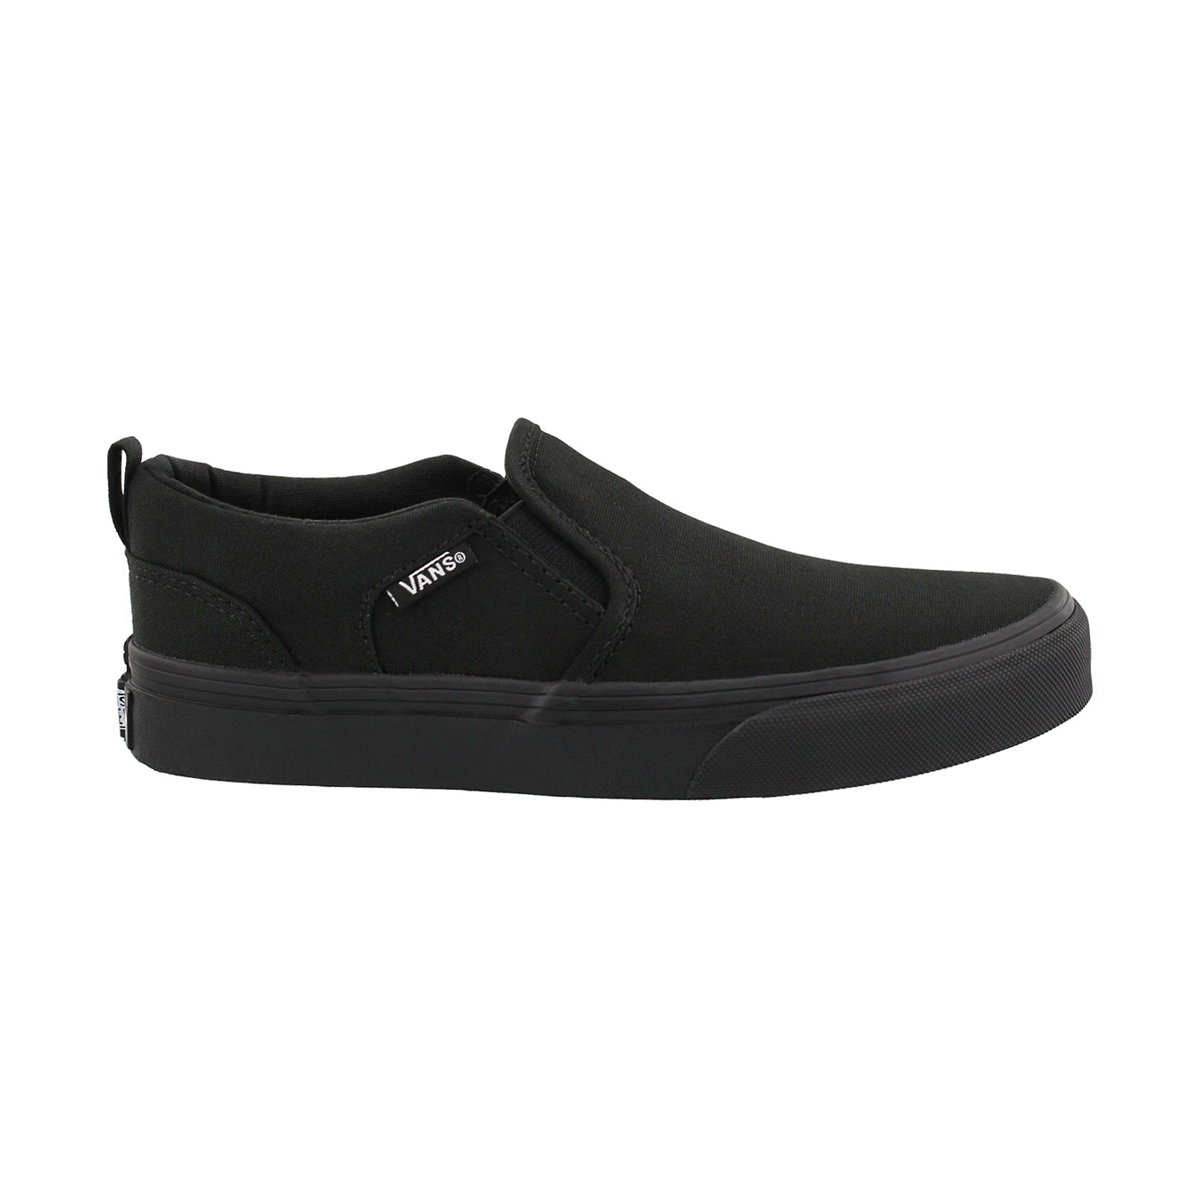 Boys' Asher Slipon Sneaker - Black/Black